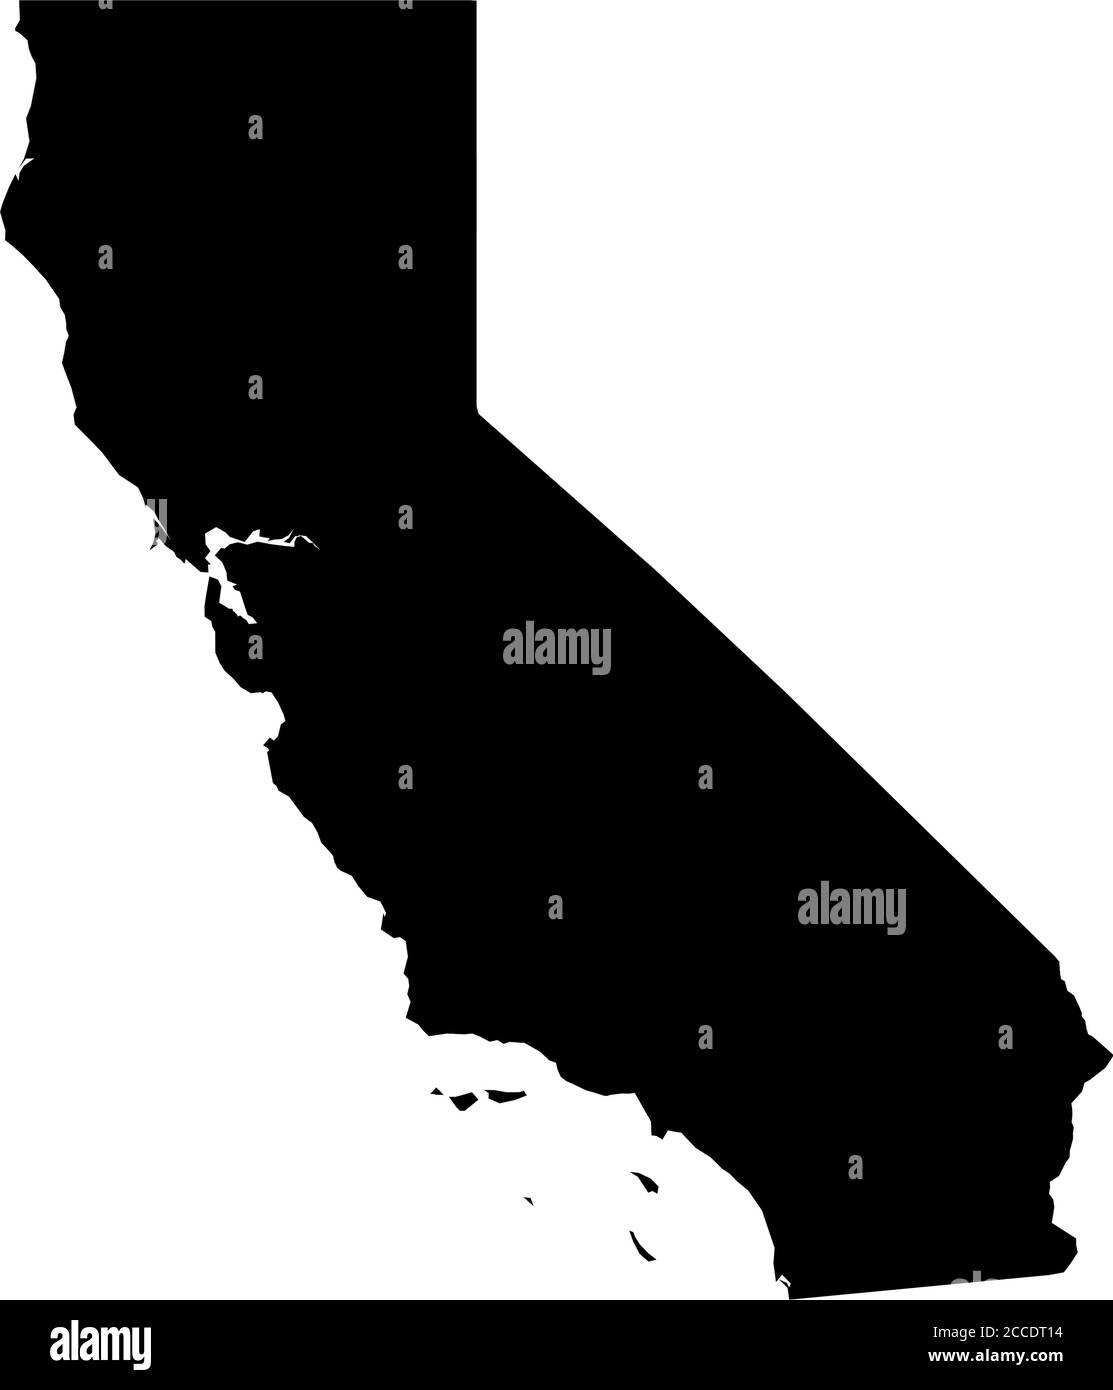 Californie, État des États-Unis - carte silhouette noire unie de la région. Illustration simple à vecteur plat. Illustration de Vecteur